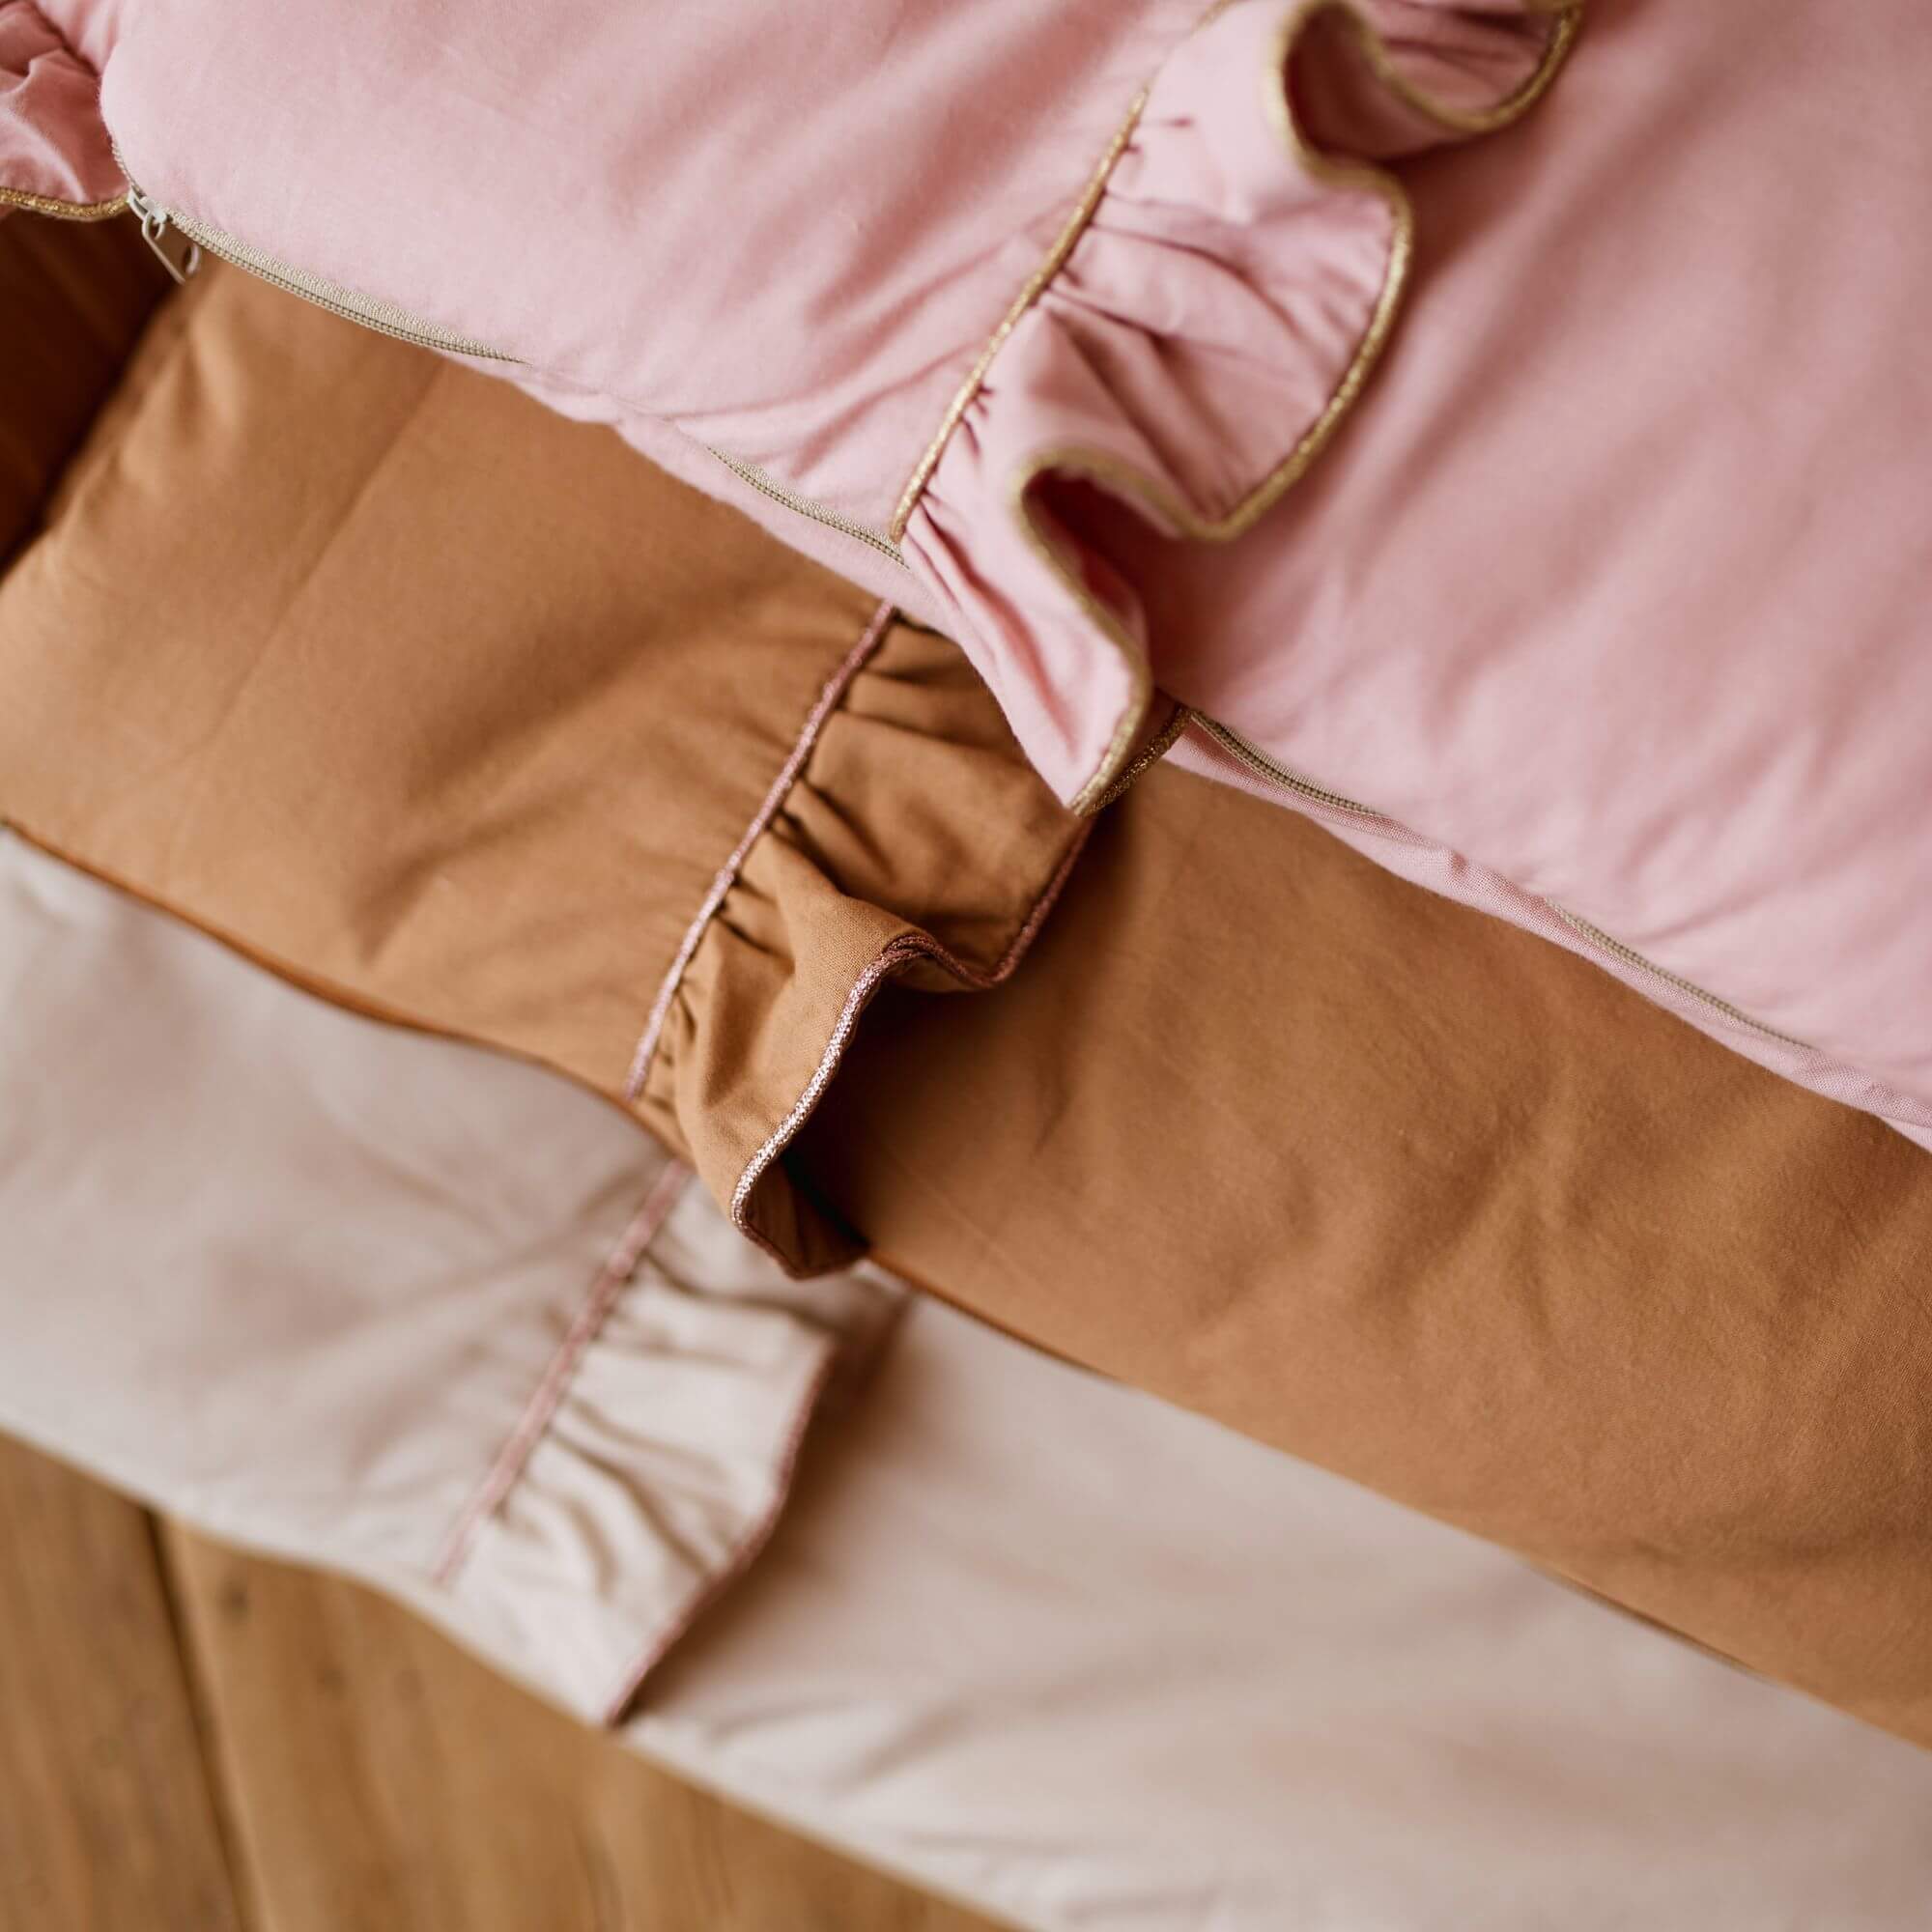 Flacher Schlafsack SHINY mit Rüschen | Baumwolle